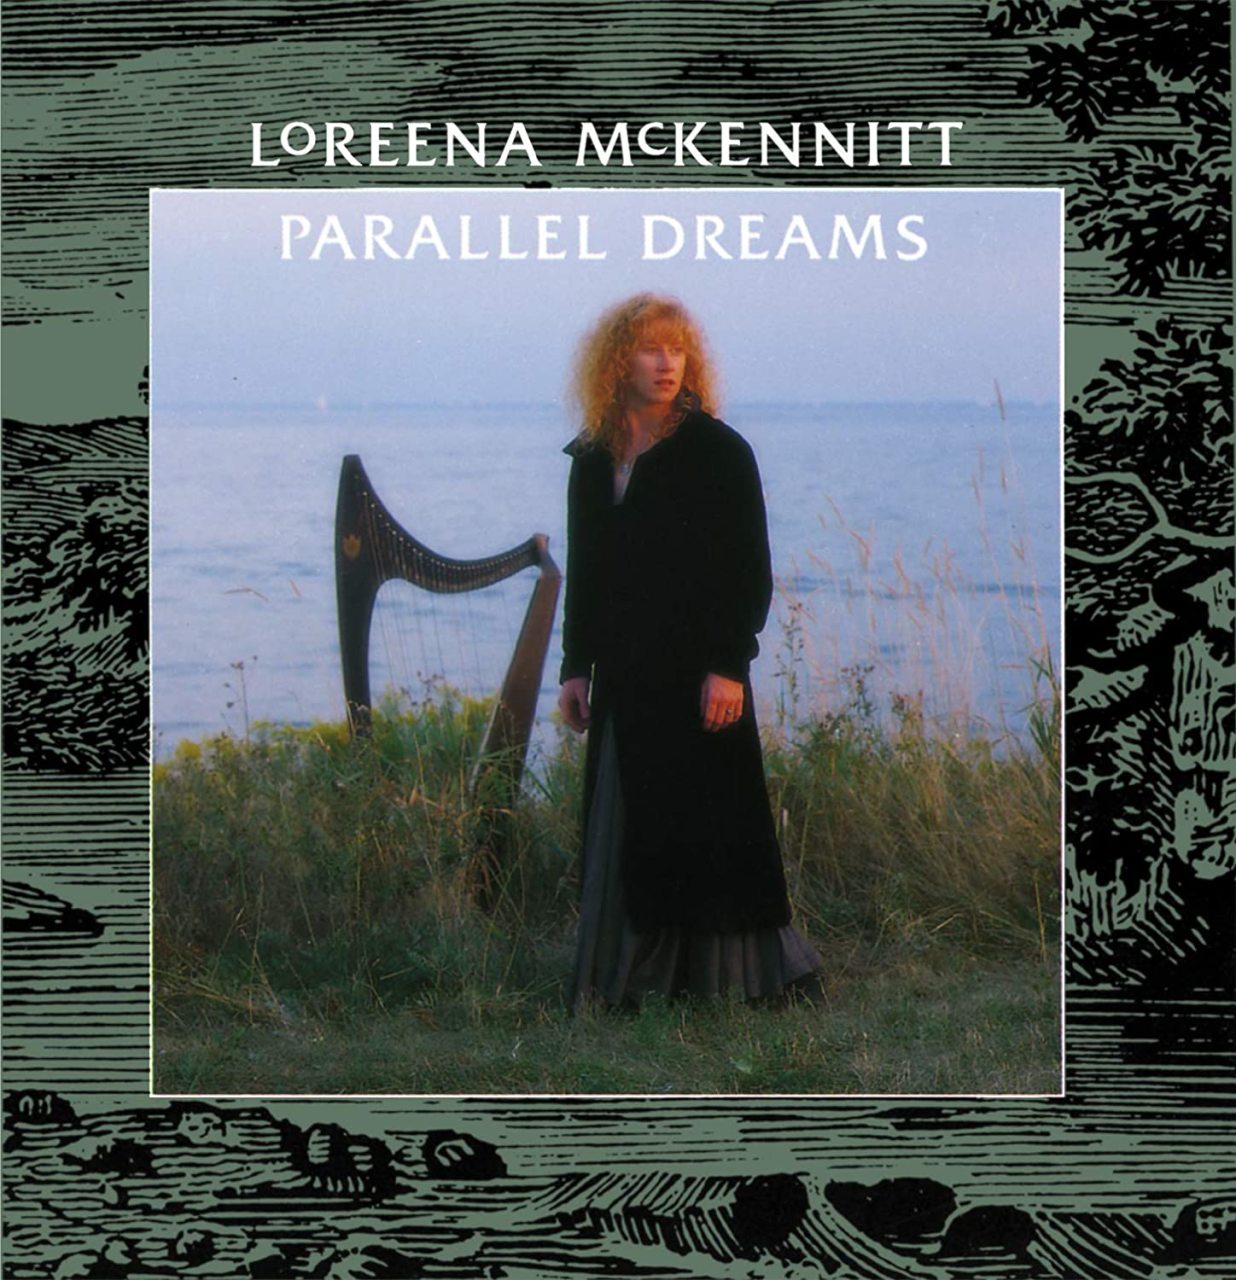 LOREENA McKENNITT - PARALLEL DREAMS (1989) - CD 2006 EDITION SIFIR